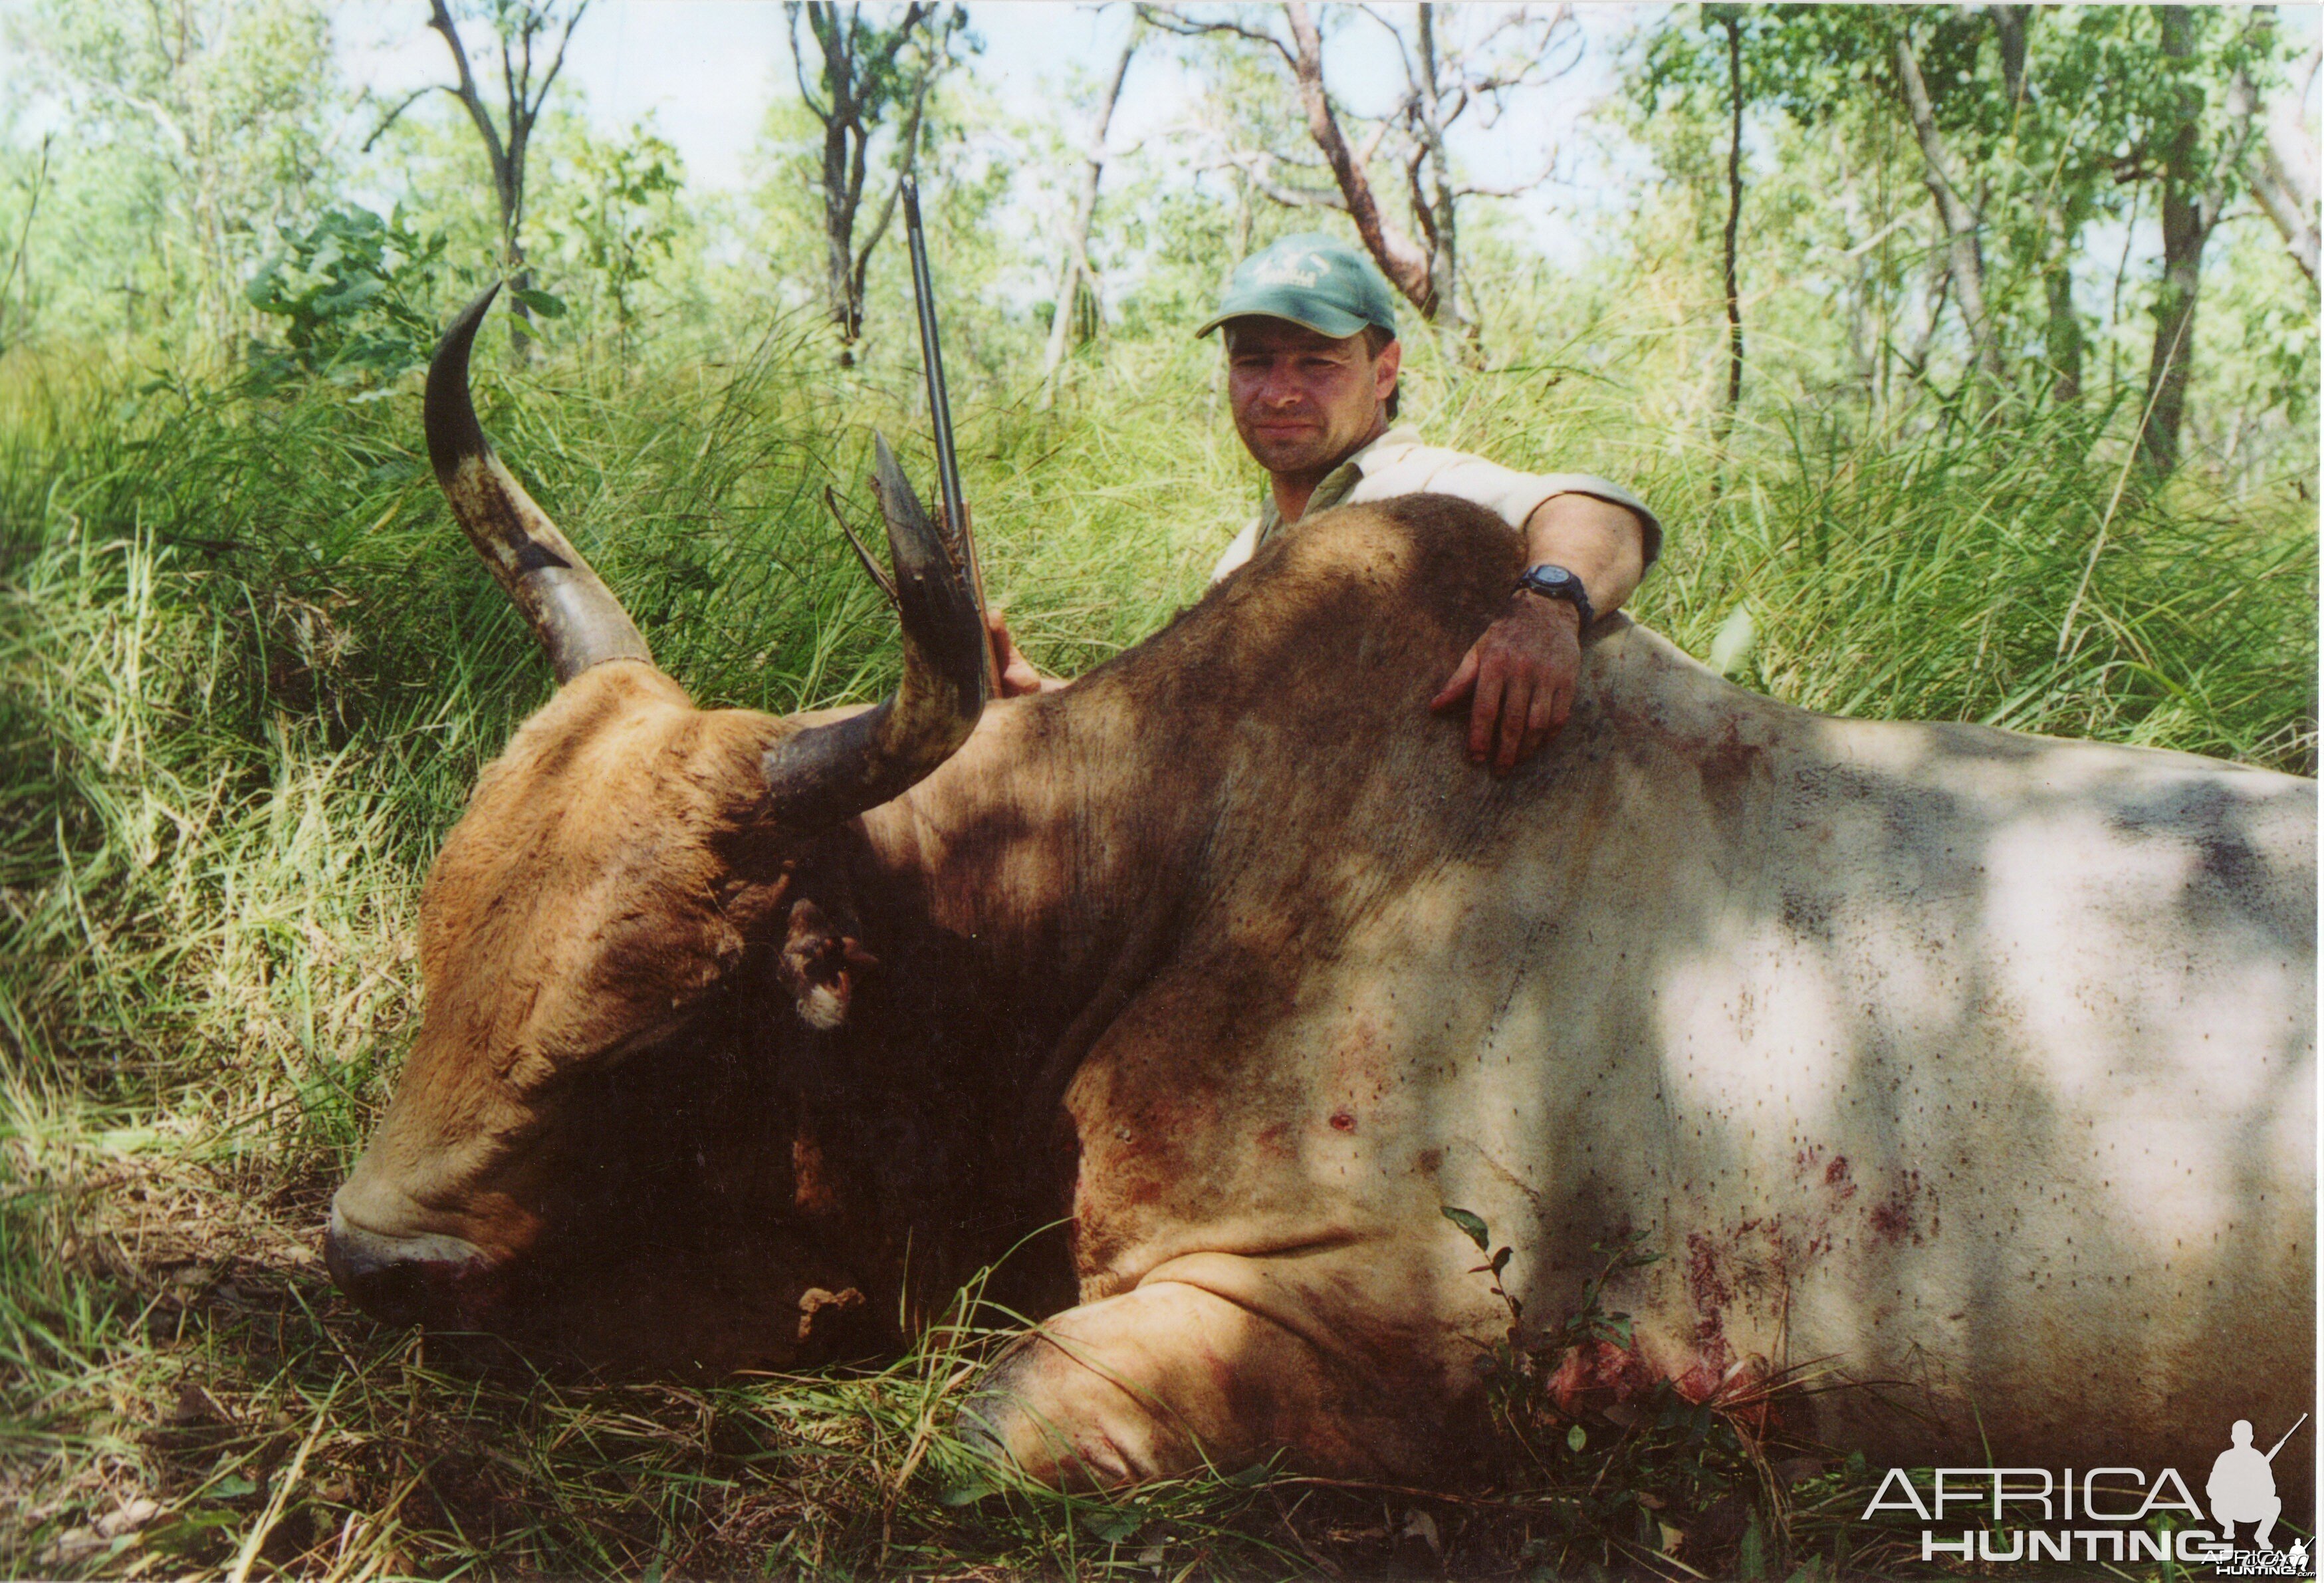 Wild Oxen, Arnhemland, Australia.